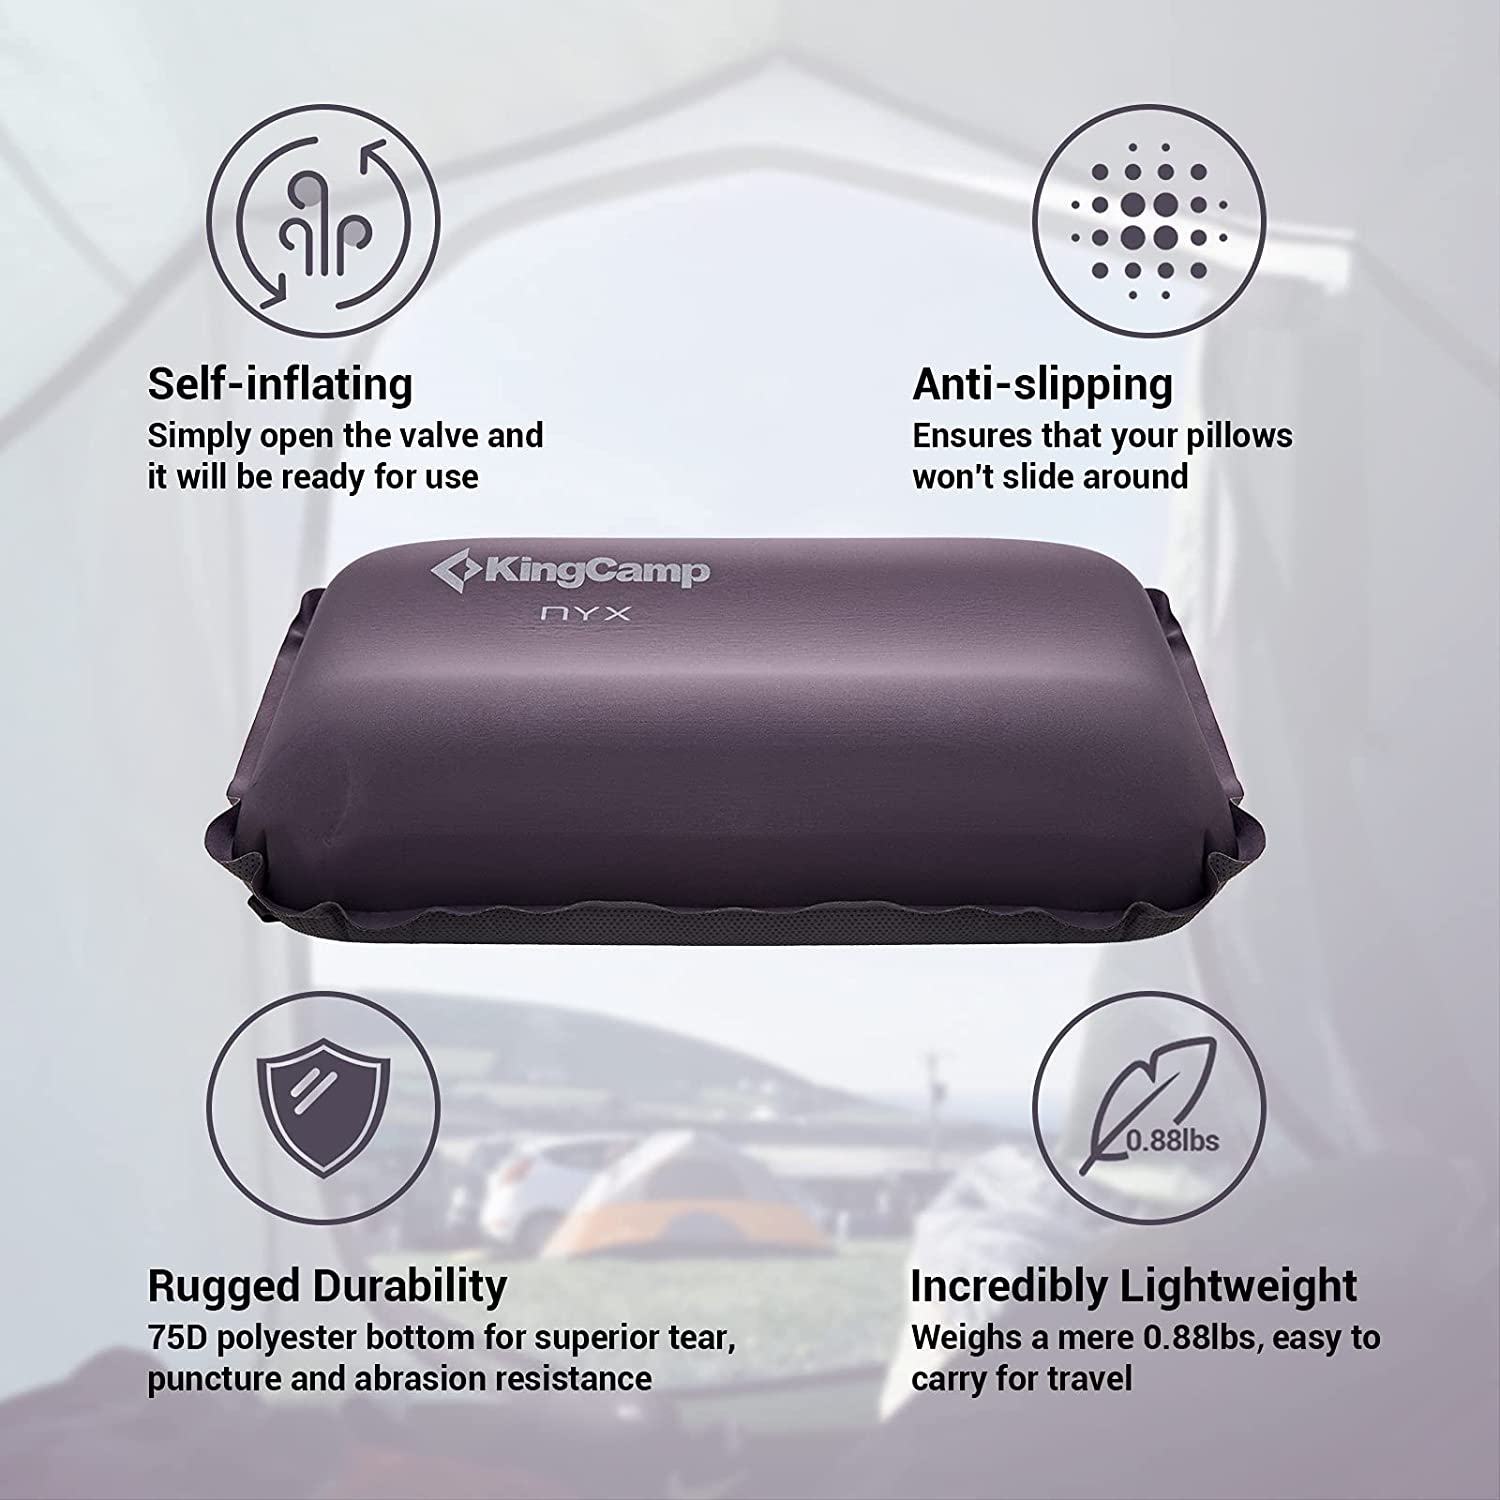 KingCamp Self-inflating Neck & Lumbar Support Pillows